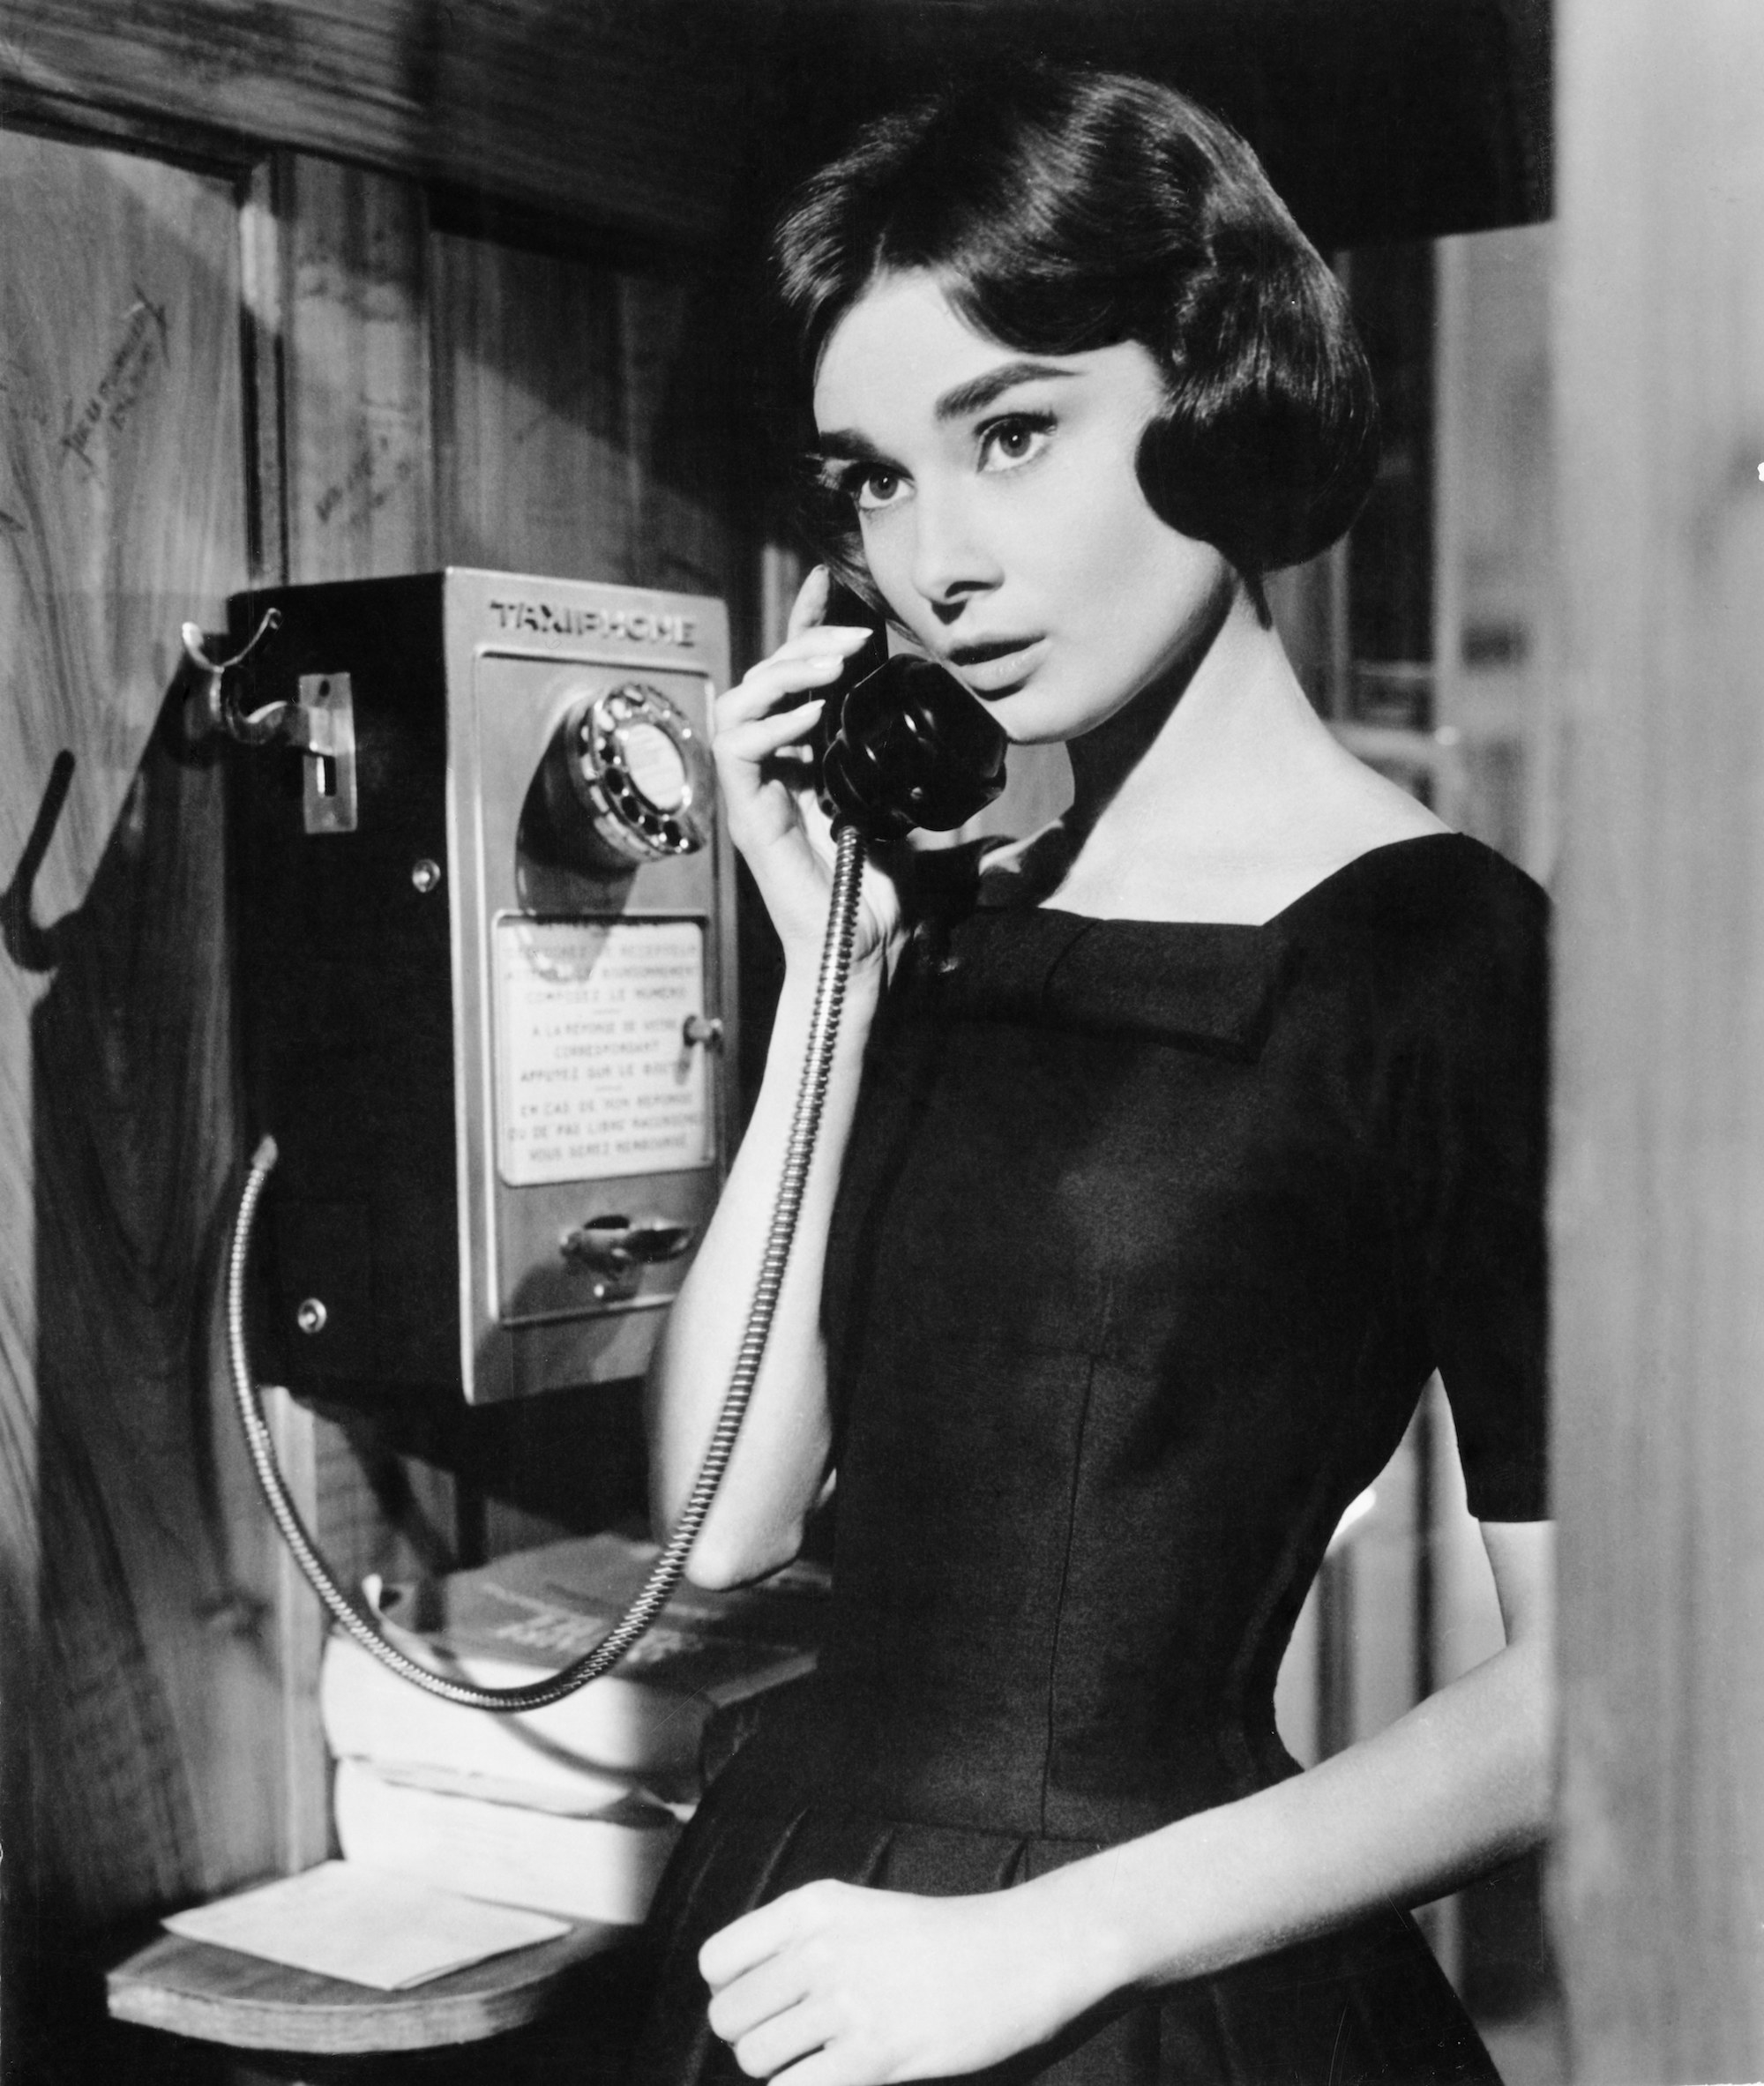 世紀の公衆電話は人と人を繋いでいた 当時の写真をモノクロ写真でプレイバック